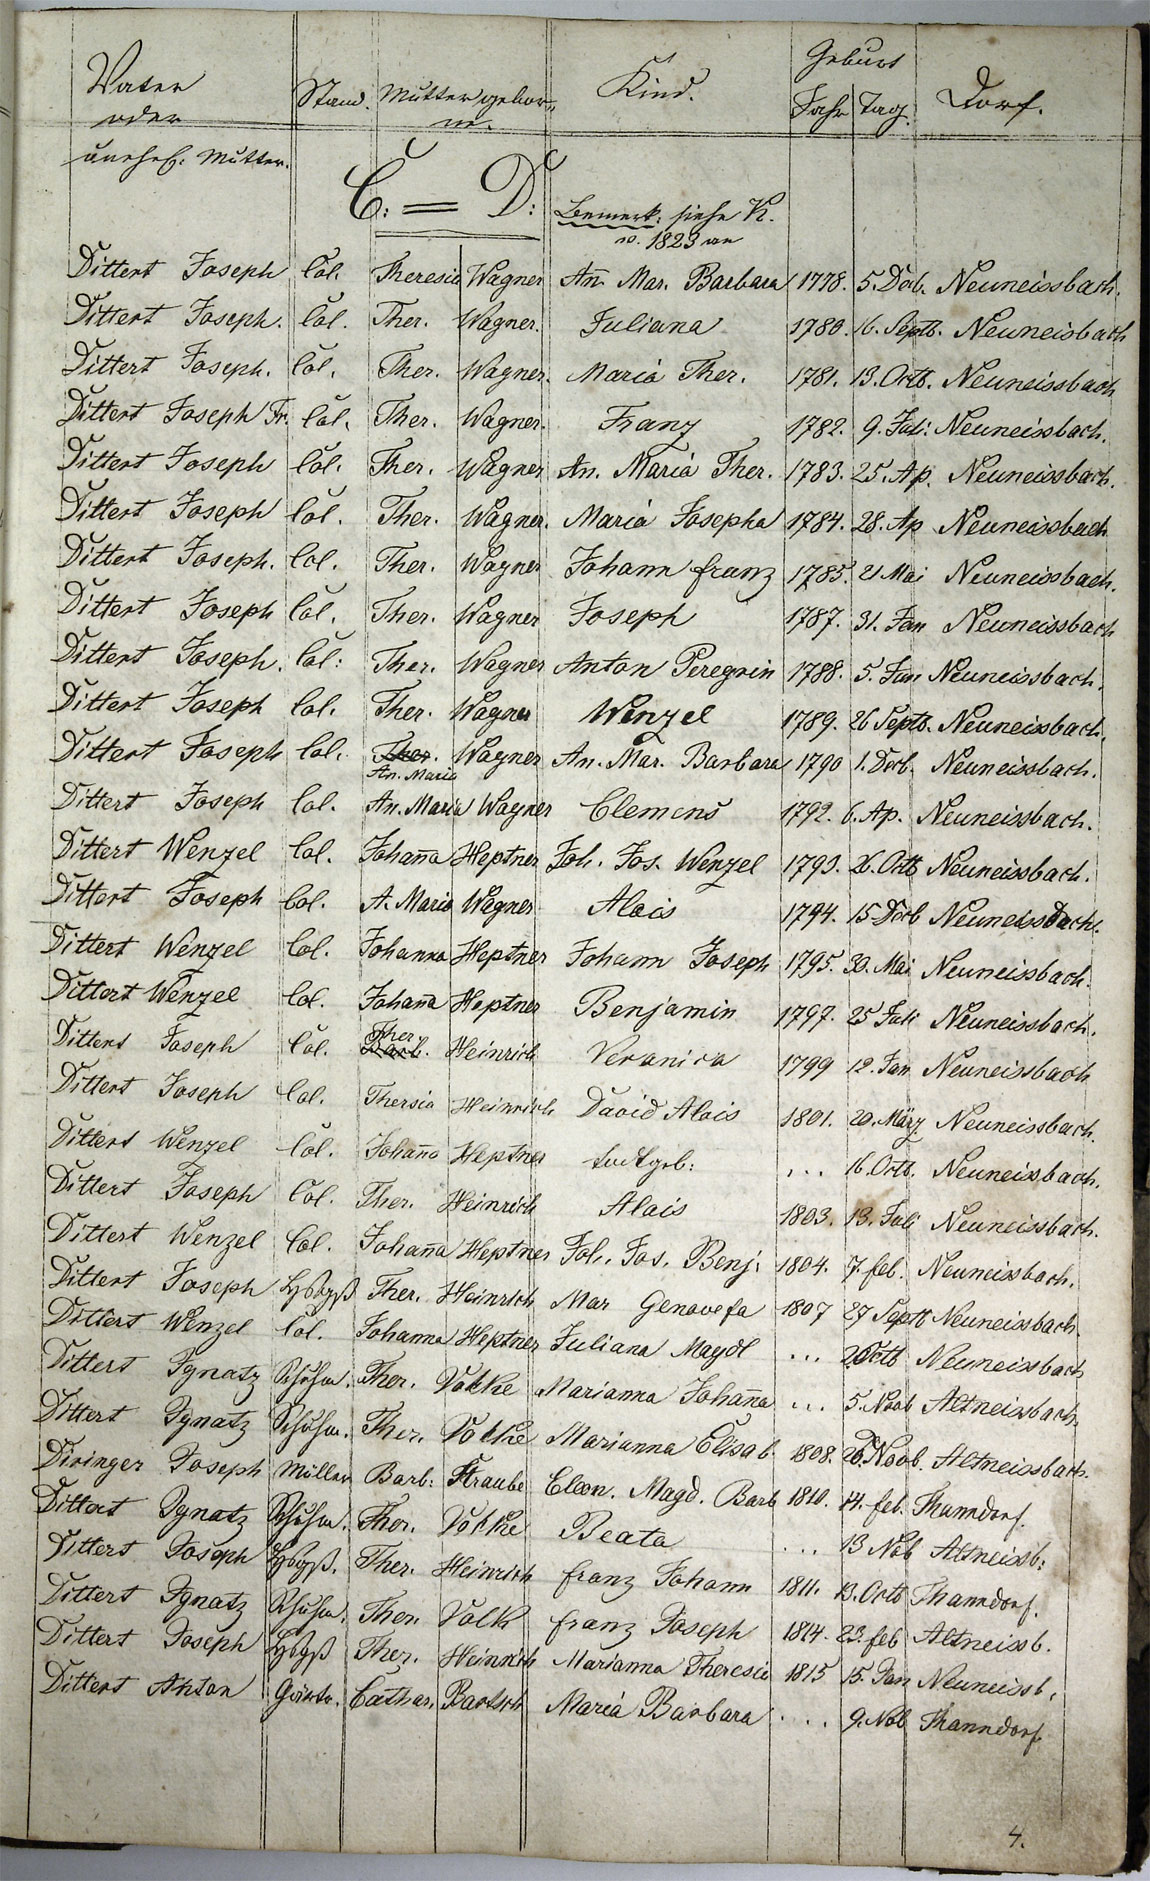 Taufregister 1770 - 1889 Seite 18